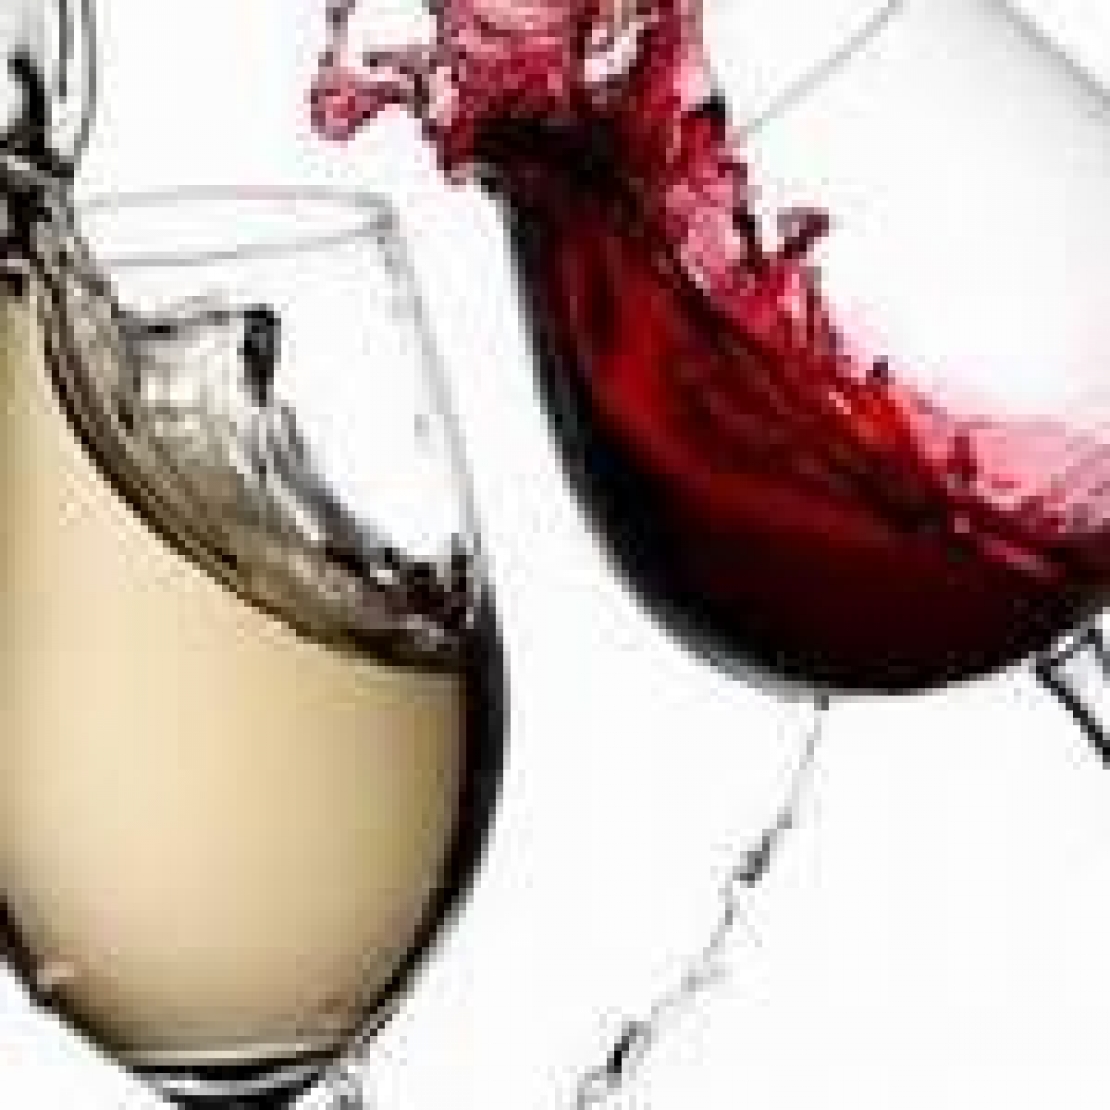 Etanolo, fruttosio e tannini possono influire sulle proprietà sensoriali dei vini